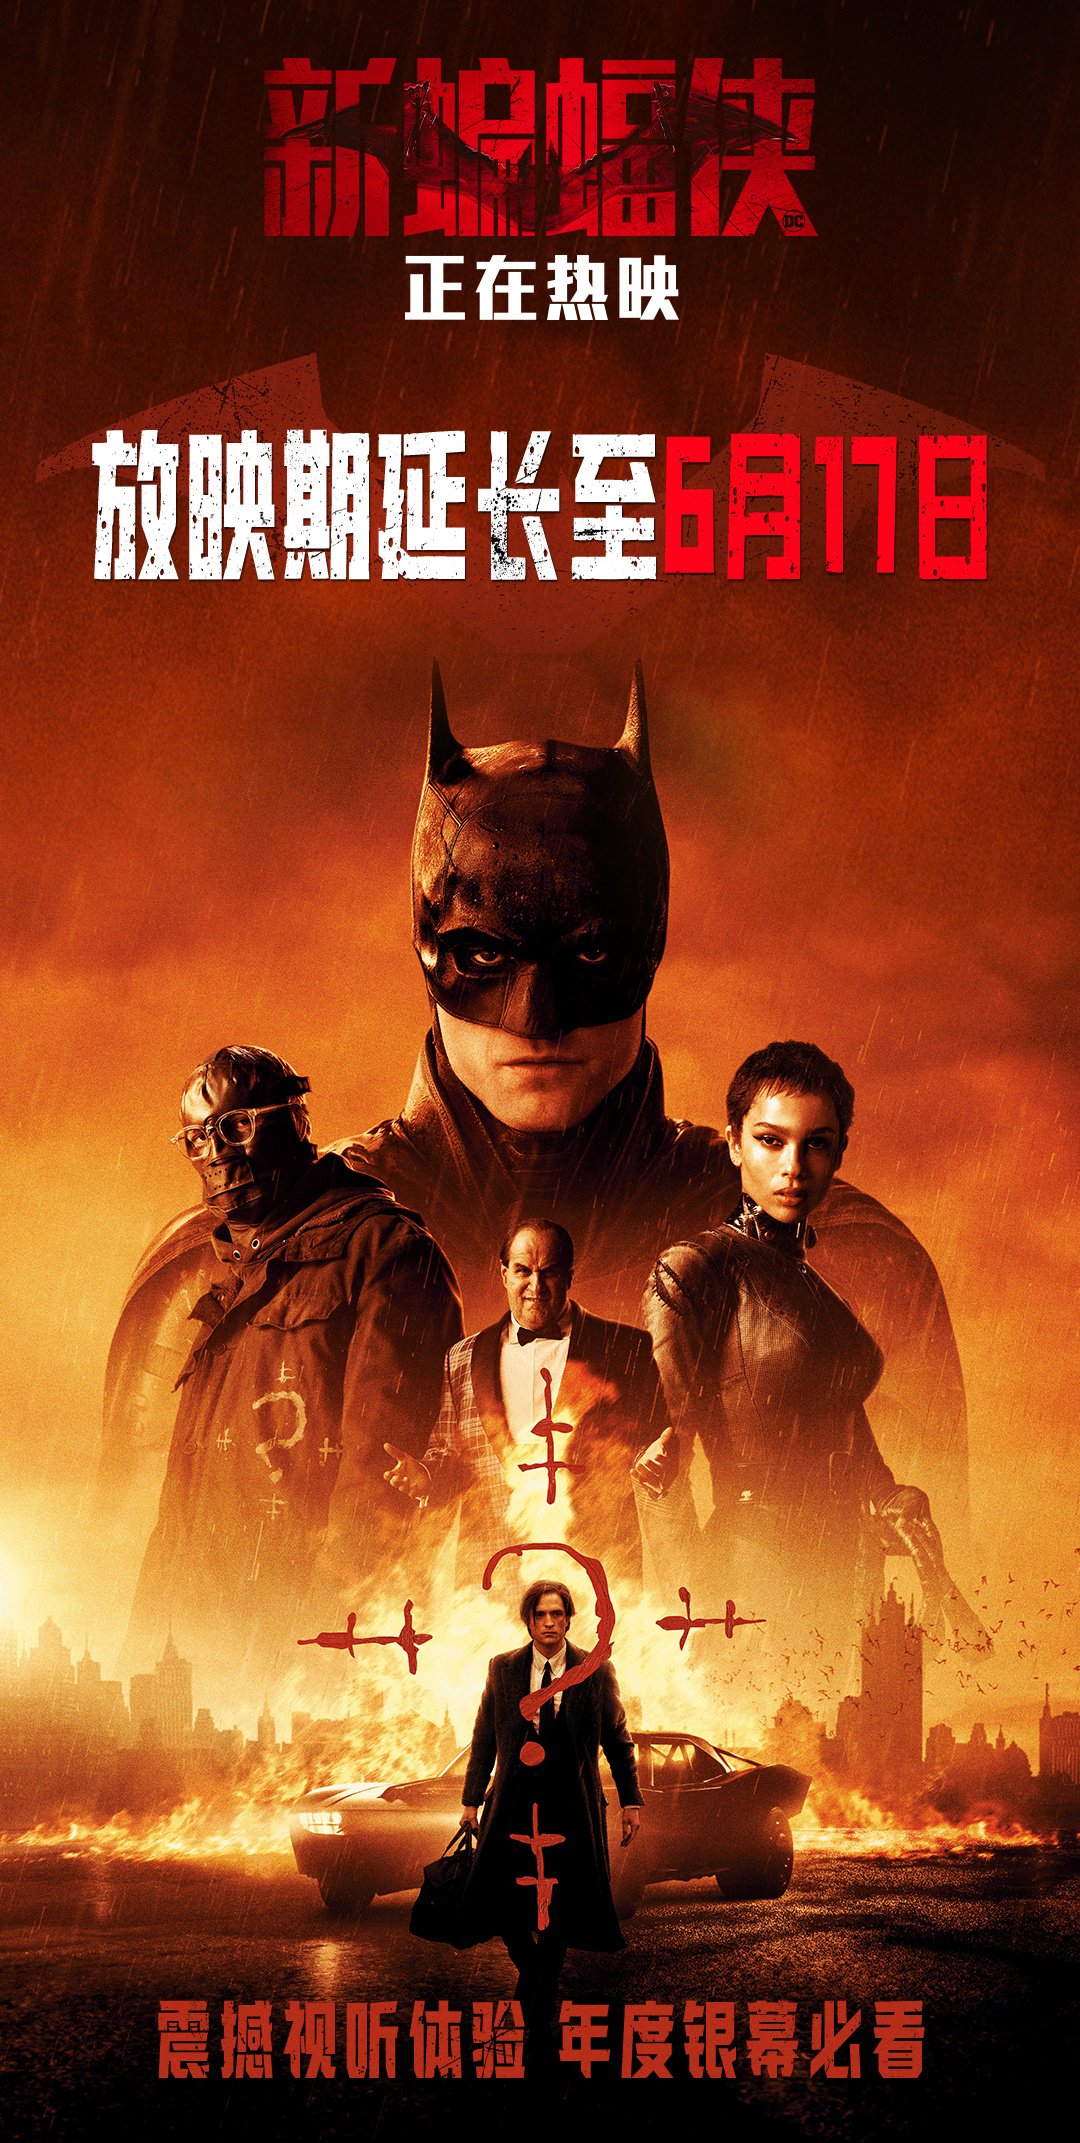 《新蝙蝠侠》宣布密钥第二次延期上映至6月17日